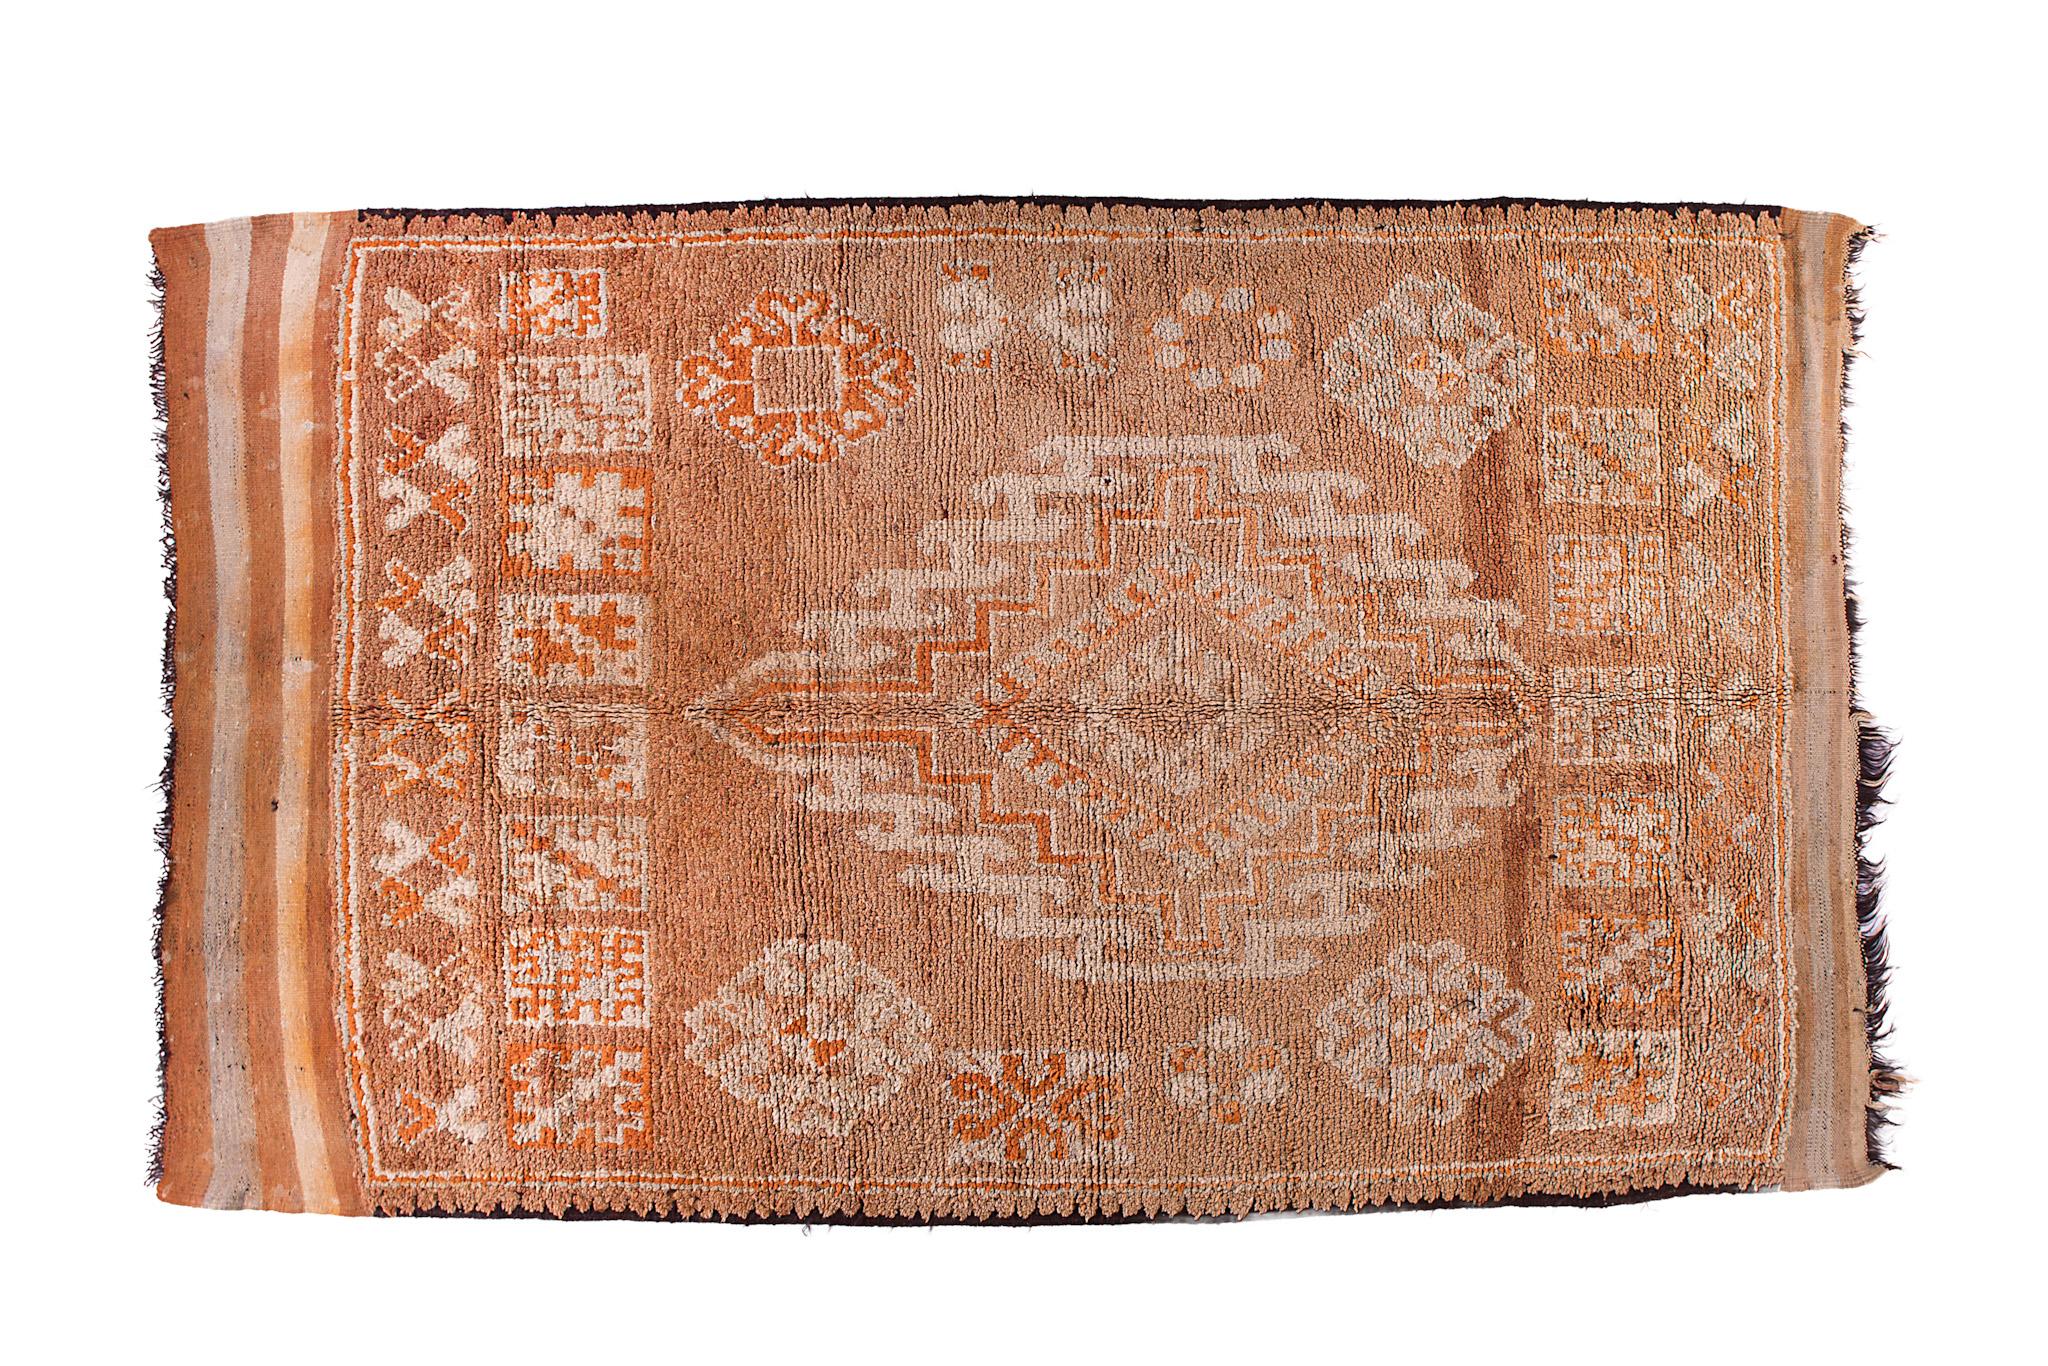 Le tapis Boujaad provient de la région d'El Haouz dans le Moyen Atlas au Maroc. Il n'y a pas d'équipement de tissage moderne, les tapis sont fabriqués manuellement par des dames artistes très talentueuses, de la même manière qu'il y a plusieurs